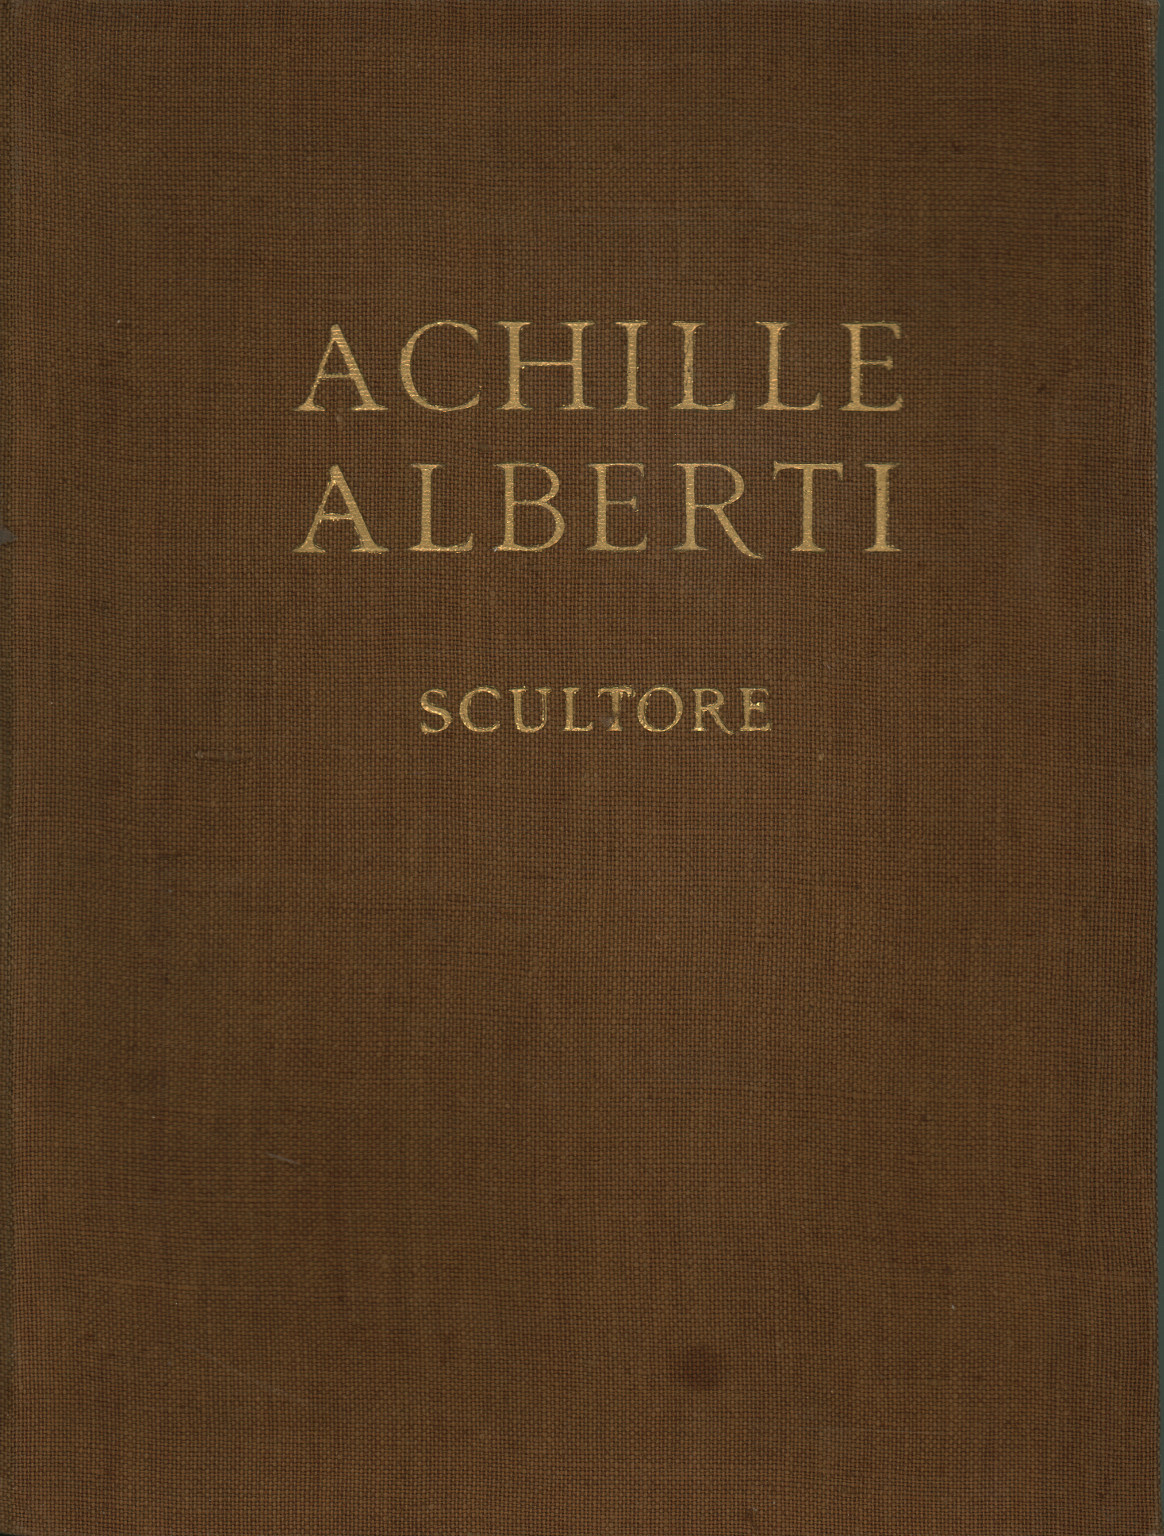 Achille Alberti sculpteur, s.a.